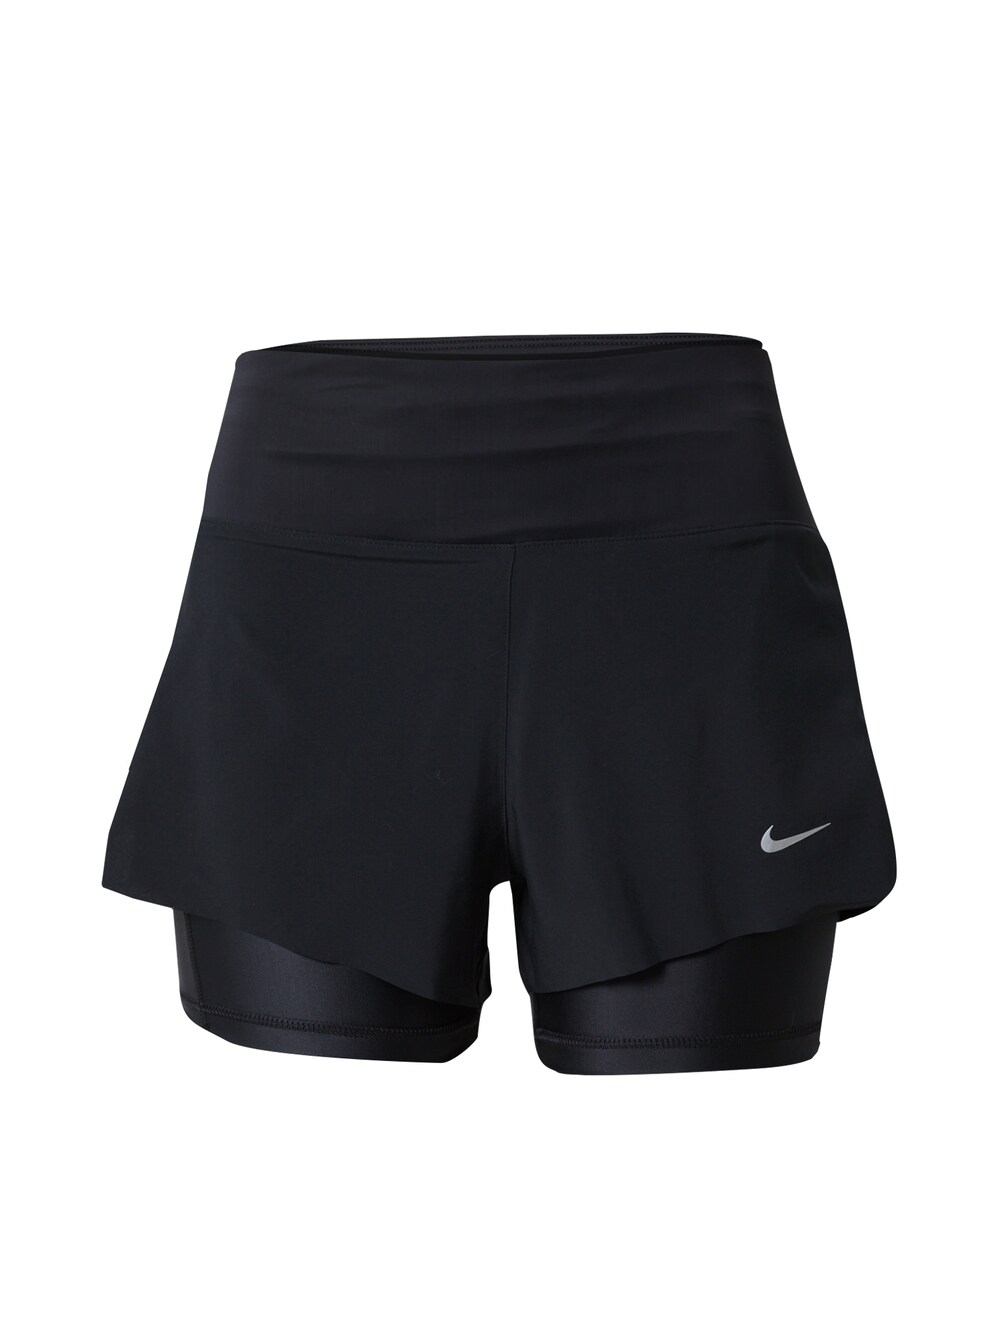 Обычные тренировочные брюки Nike, черный обычные тренировочные брюки virtus черный